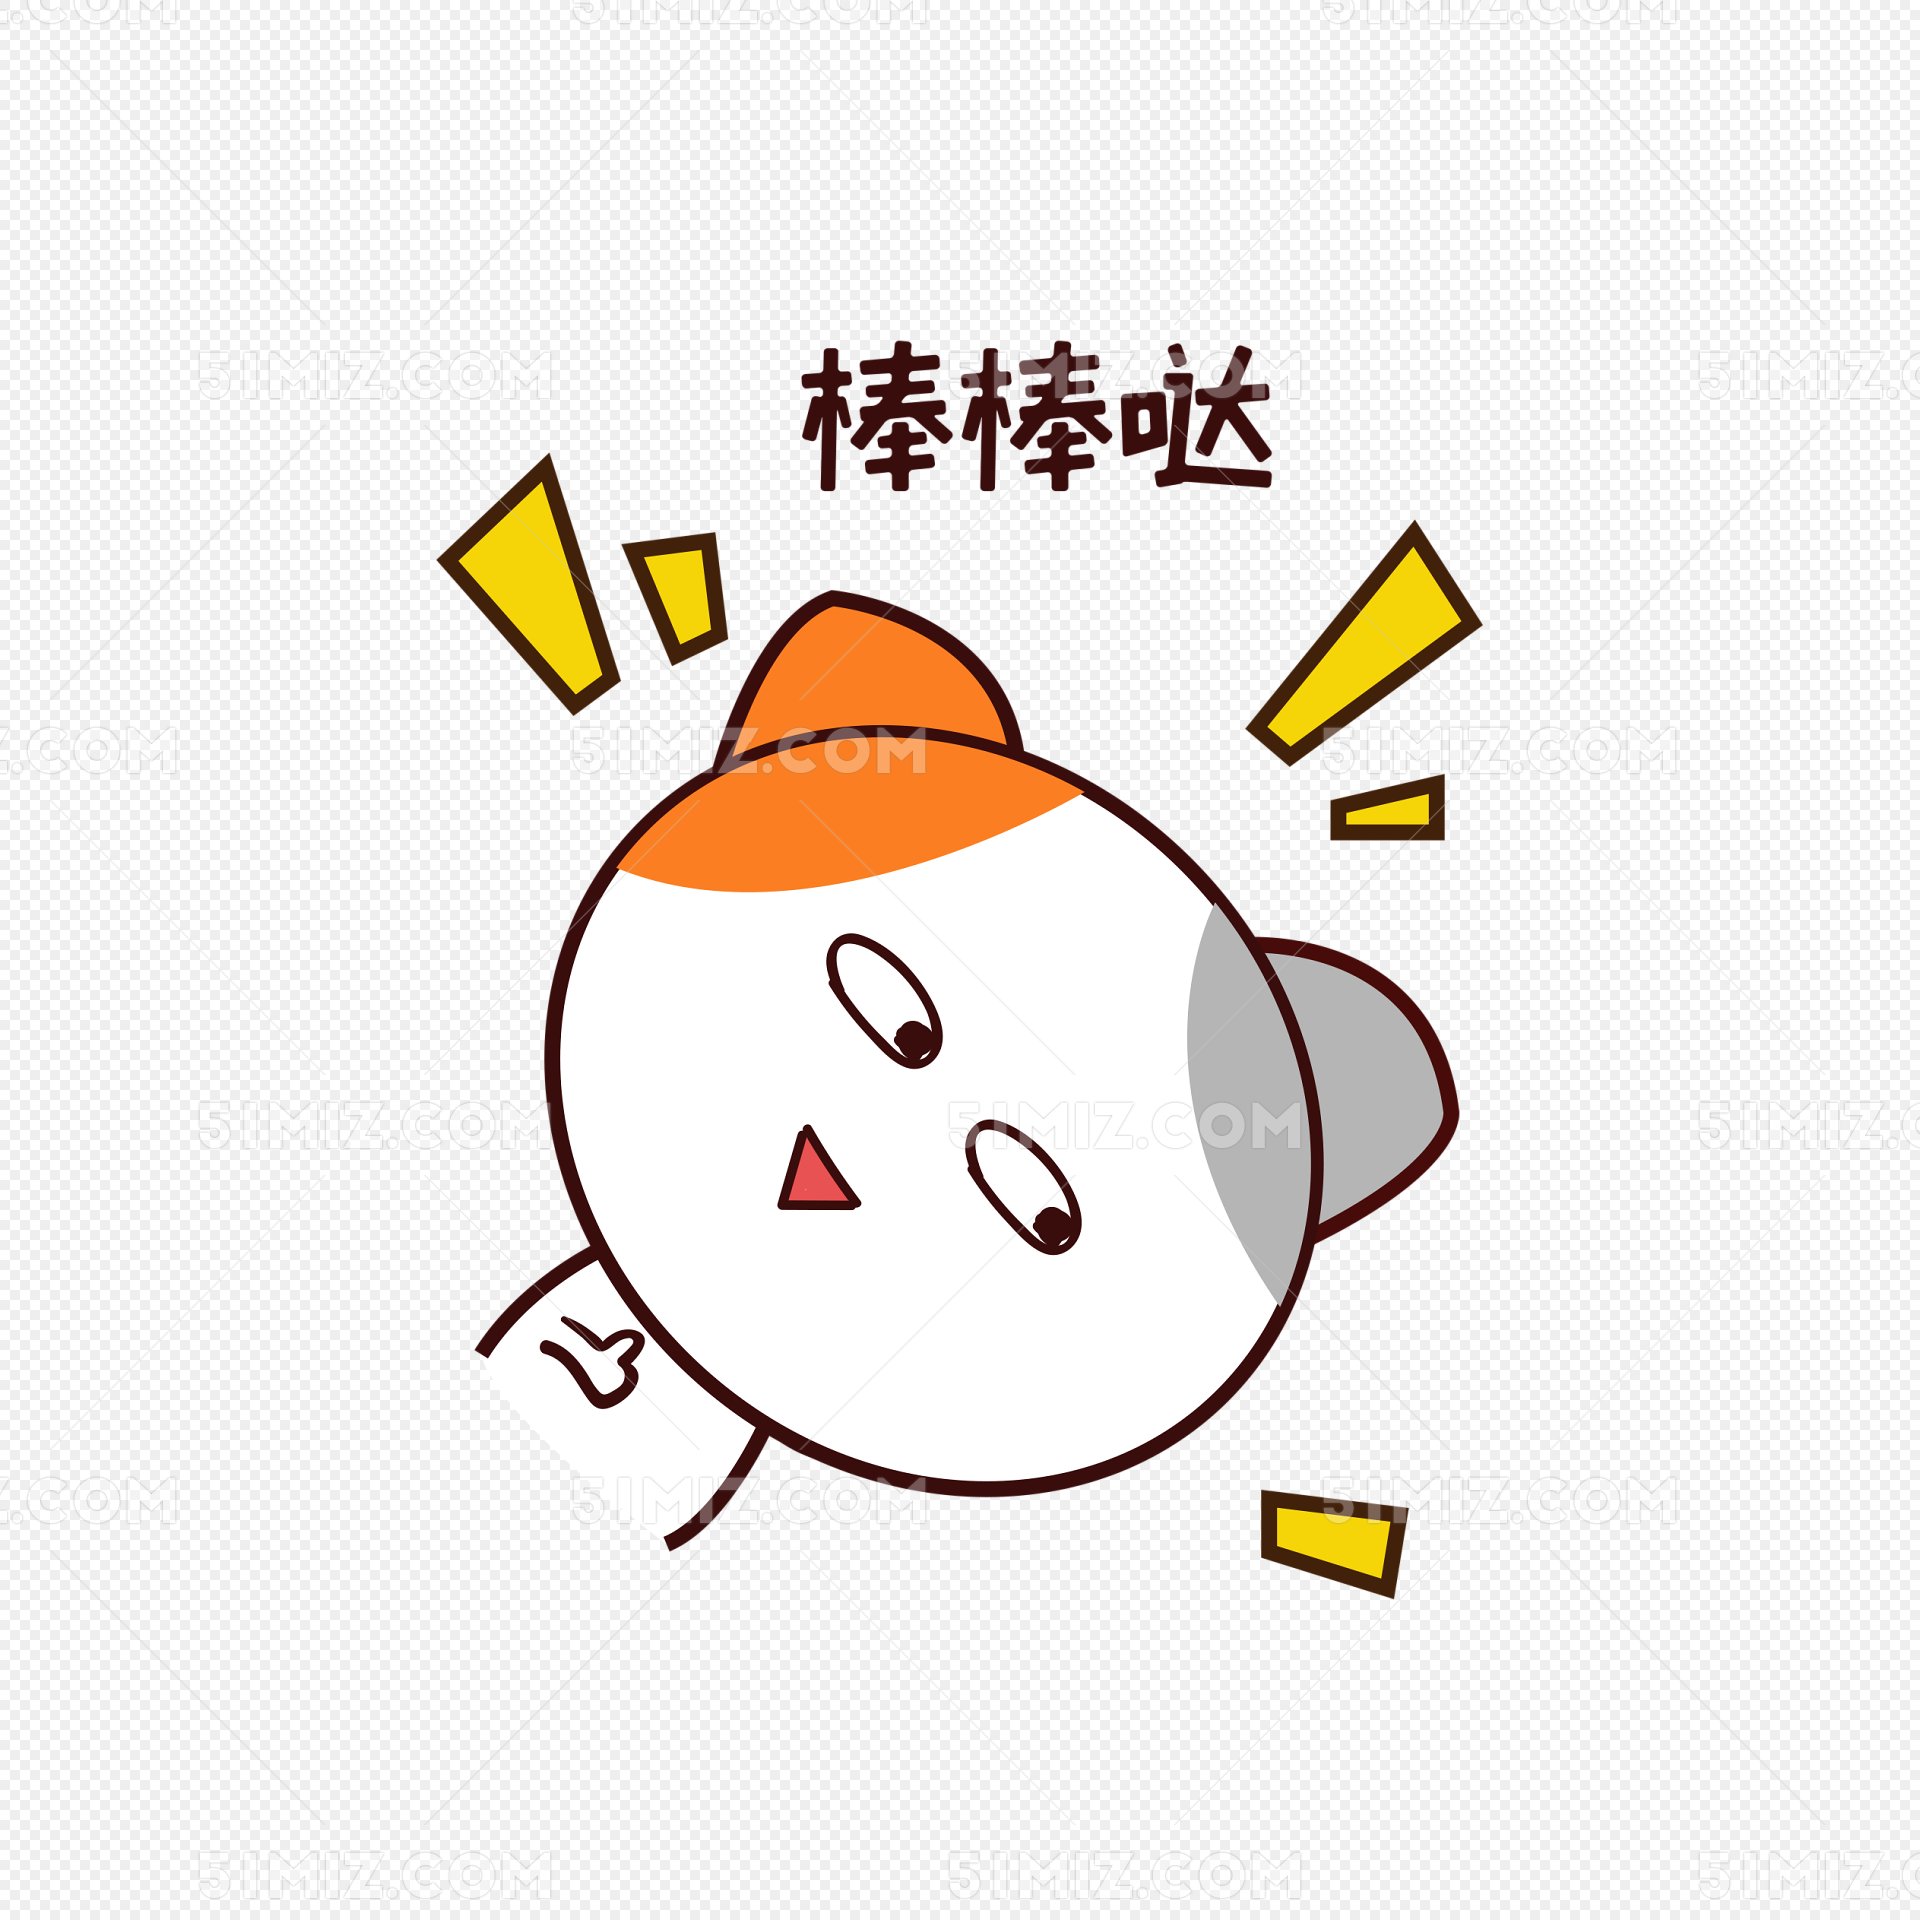 萌萌可爱的小猫咪手机壁纸下载-搜狐大视野-搜狐新闻